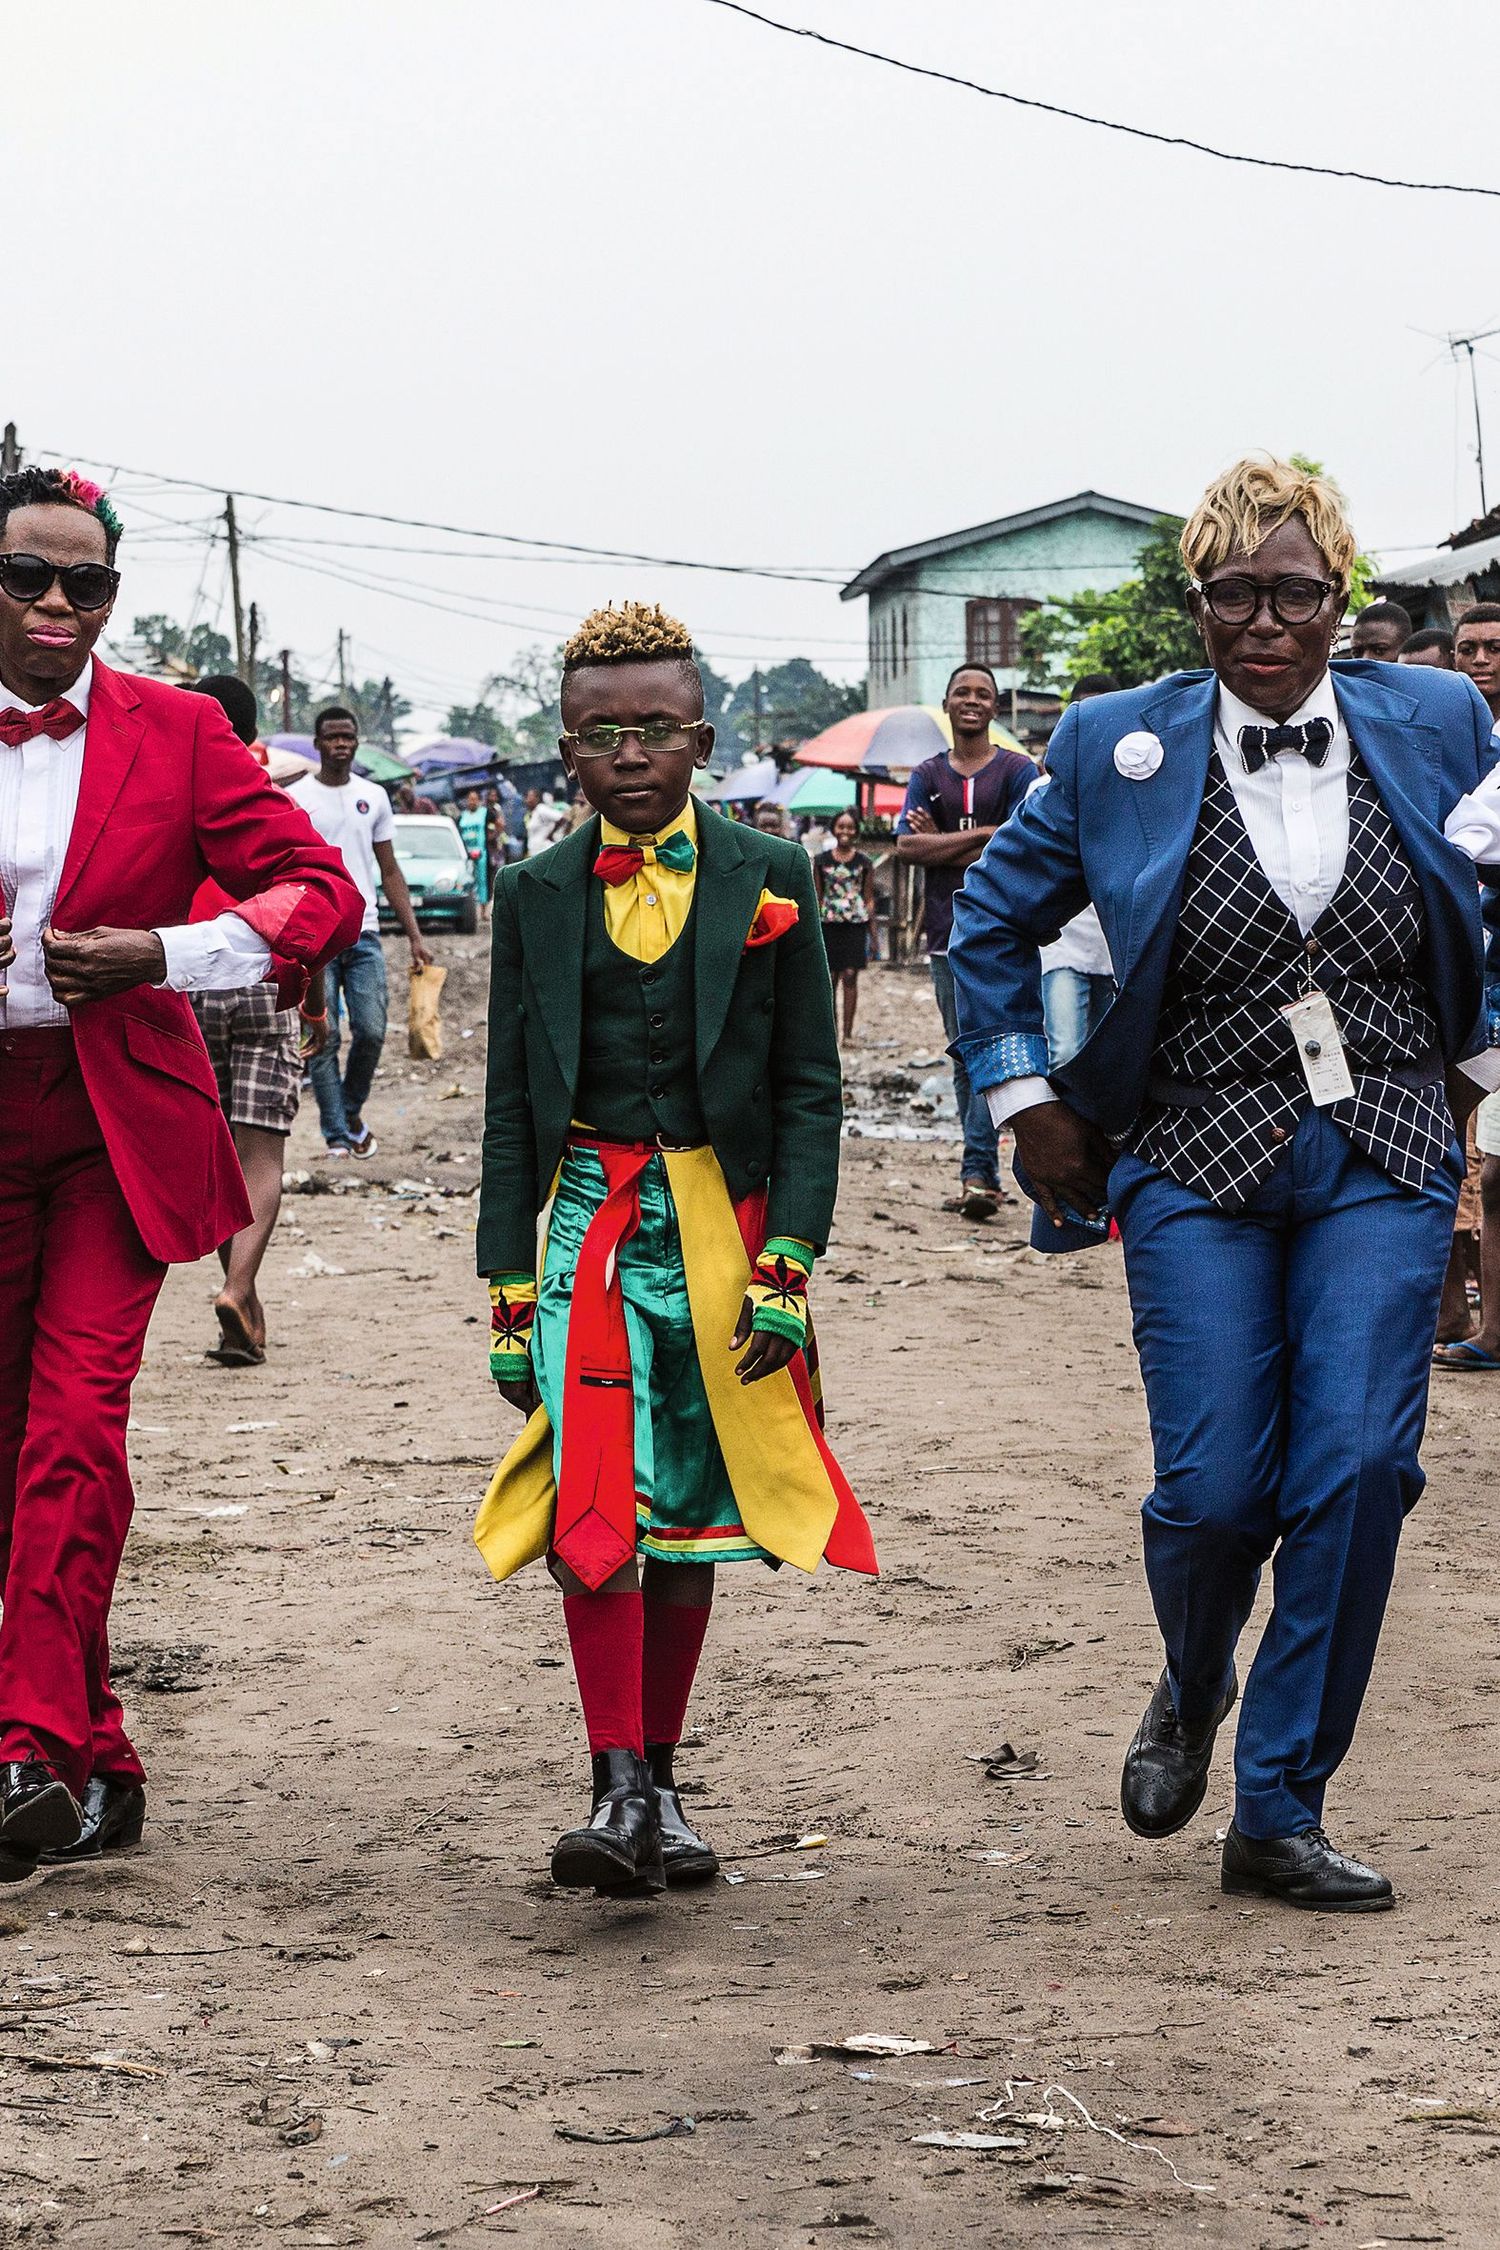 Sapeurs: Ladies and Gentlemen of the Congo - Vogue Scandinavia